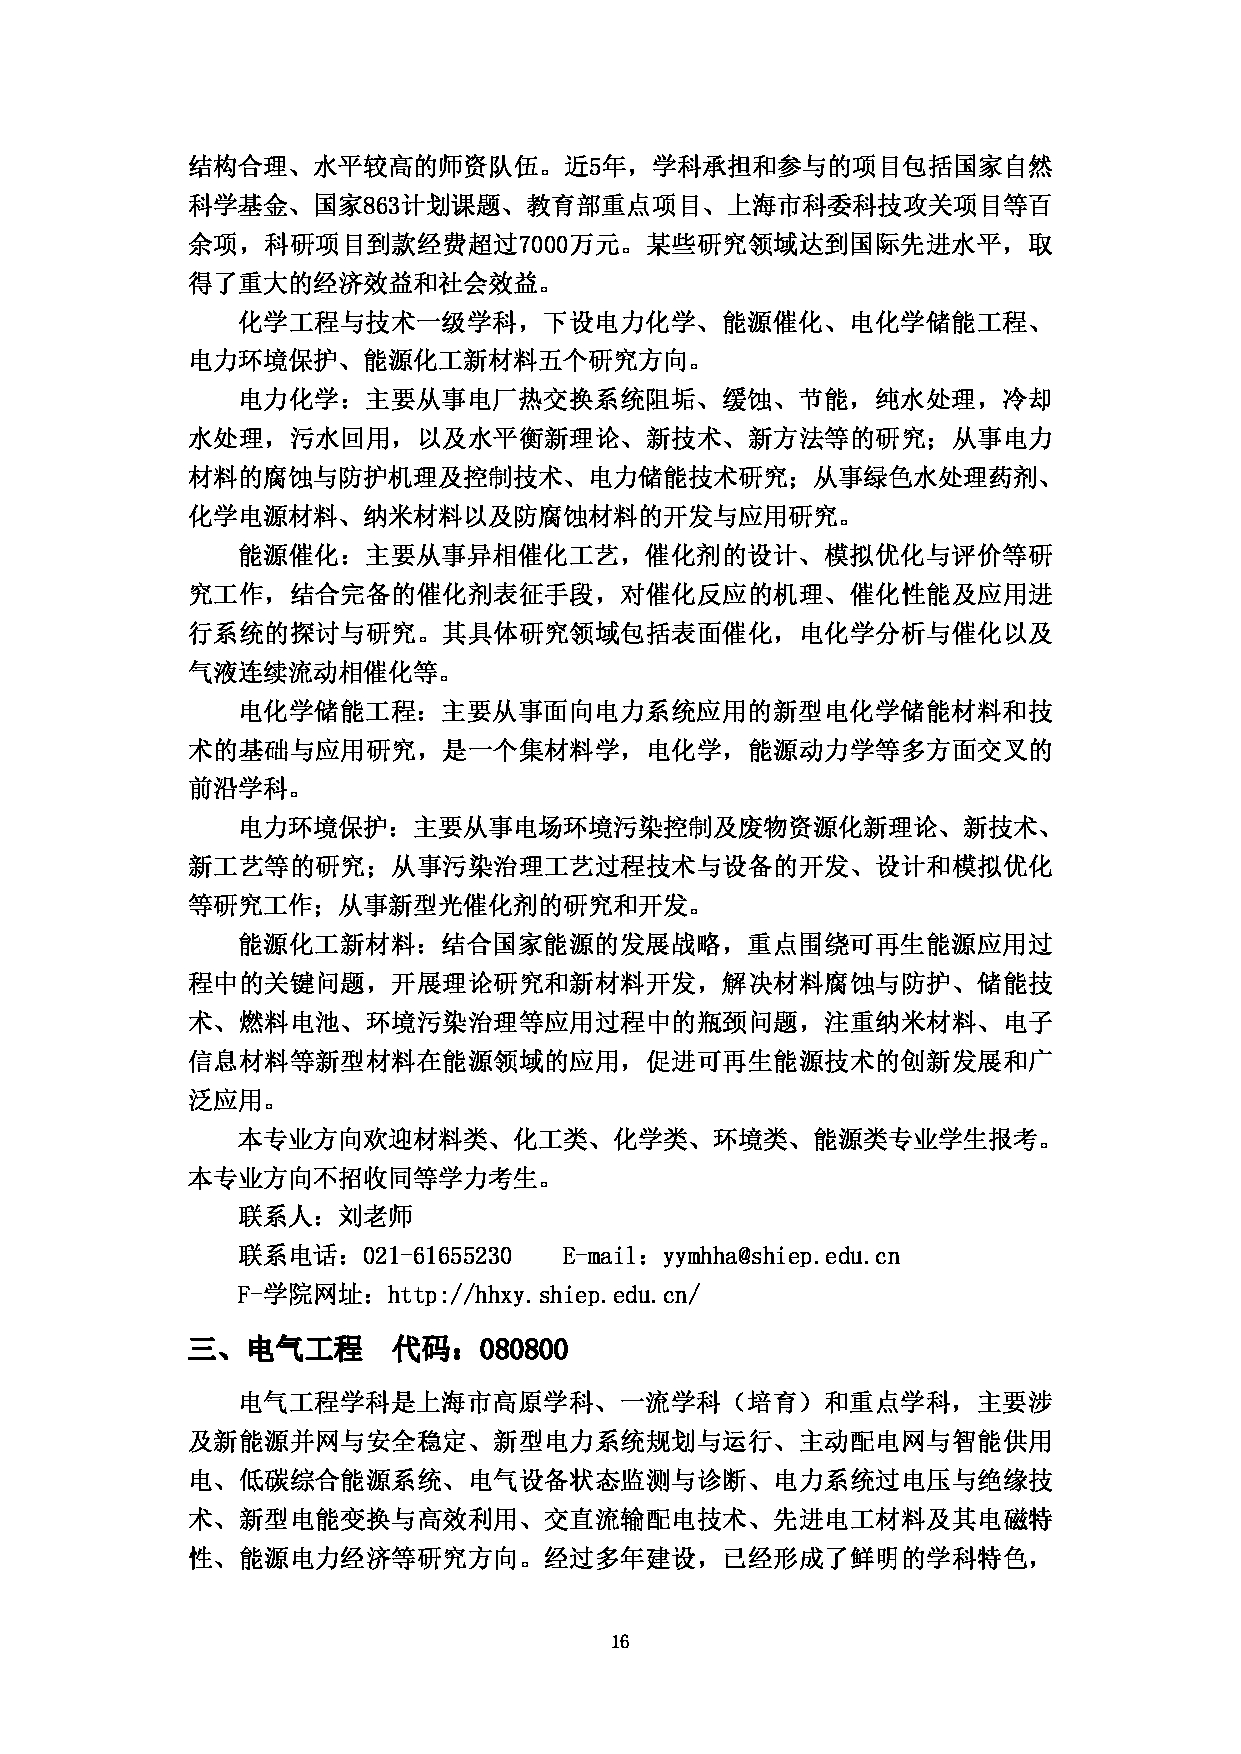 2023招生简章：上海电力大学2023年招收攻读硕士学位研究生招生简章第18页